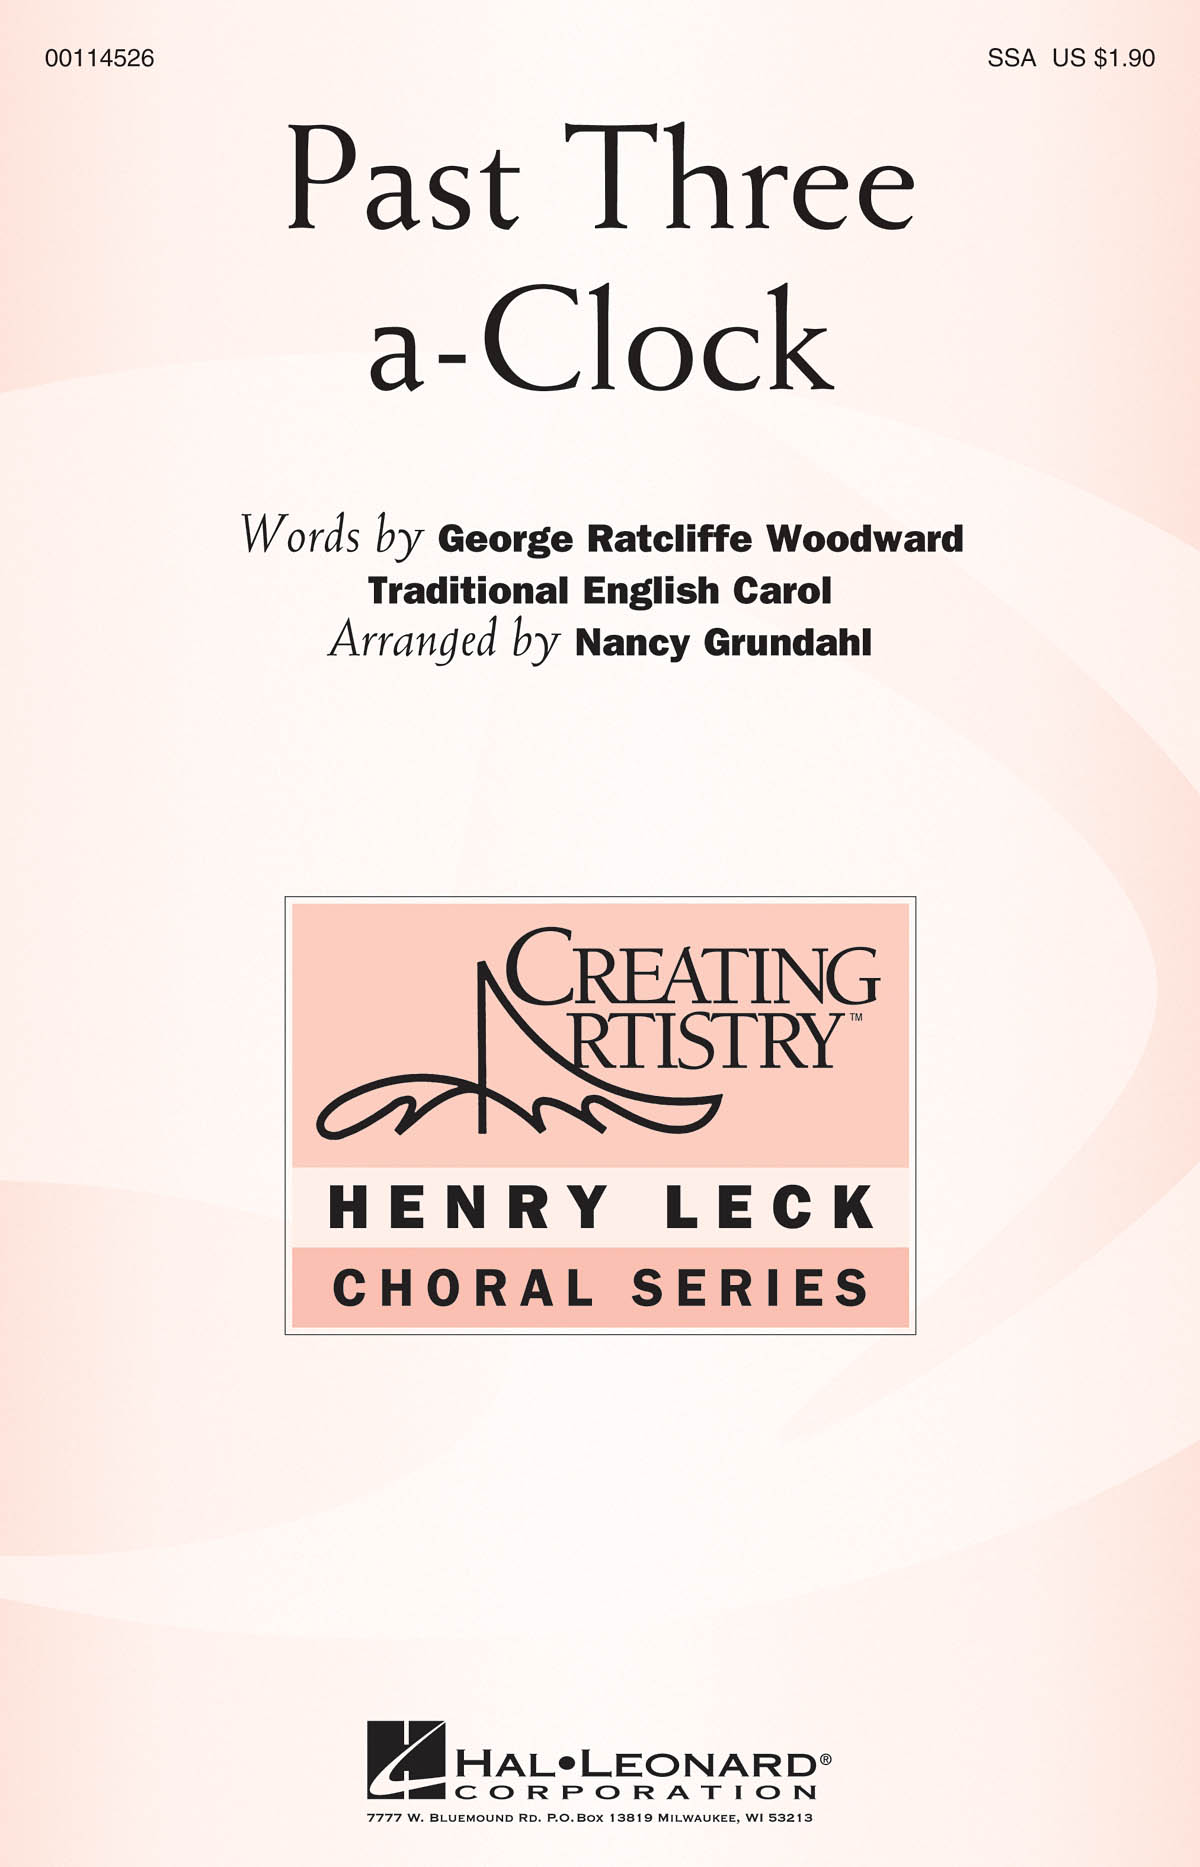 Past Three a-Clock: Upper Voices a Cappella: Vocal Score